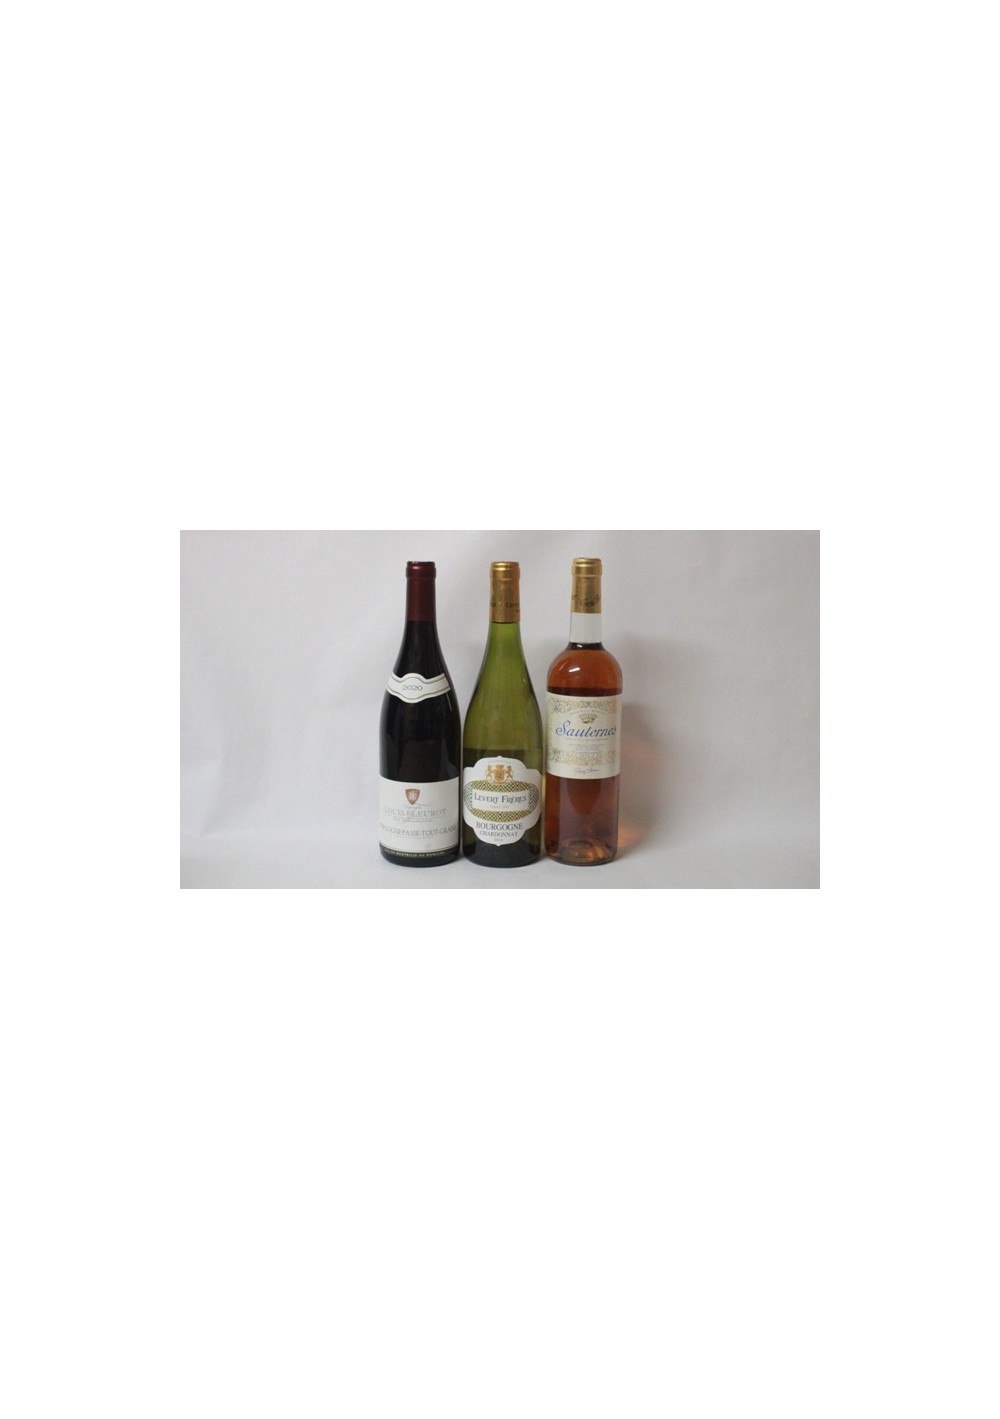 (2) Bourgogne Passe-Tout-Grains - Bourgogne Chardonnay 2019